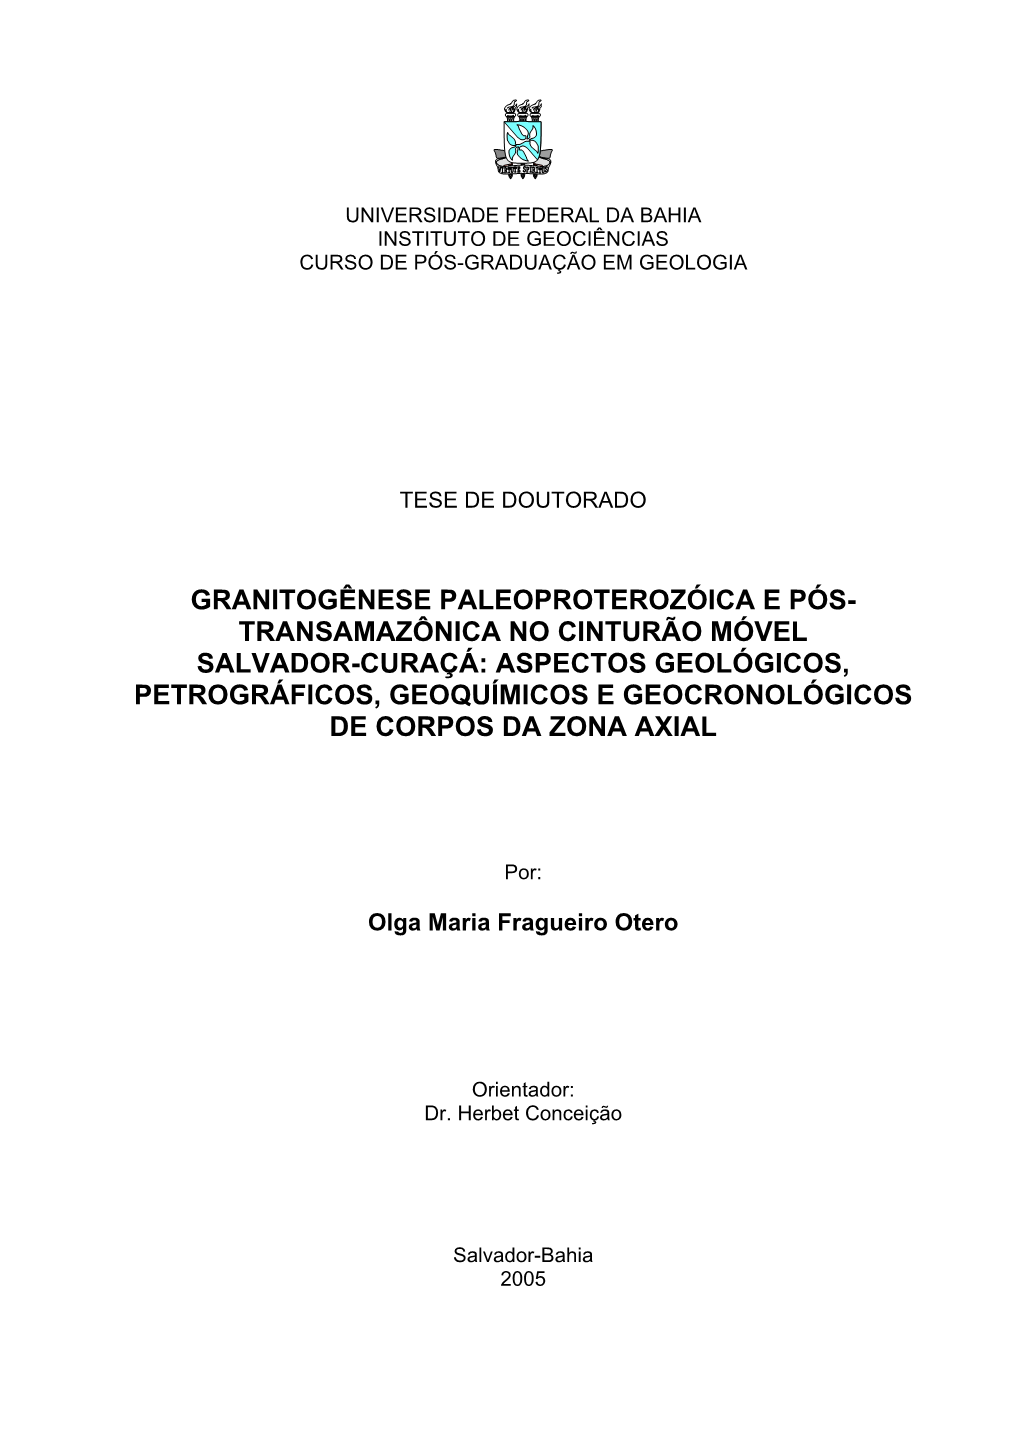 Aspectos Geológicos, Petrográficos, Geoquímicos E Geocronológicos De Corpos Da Zona Axial